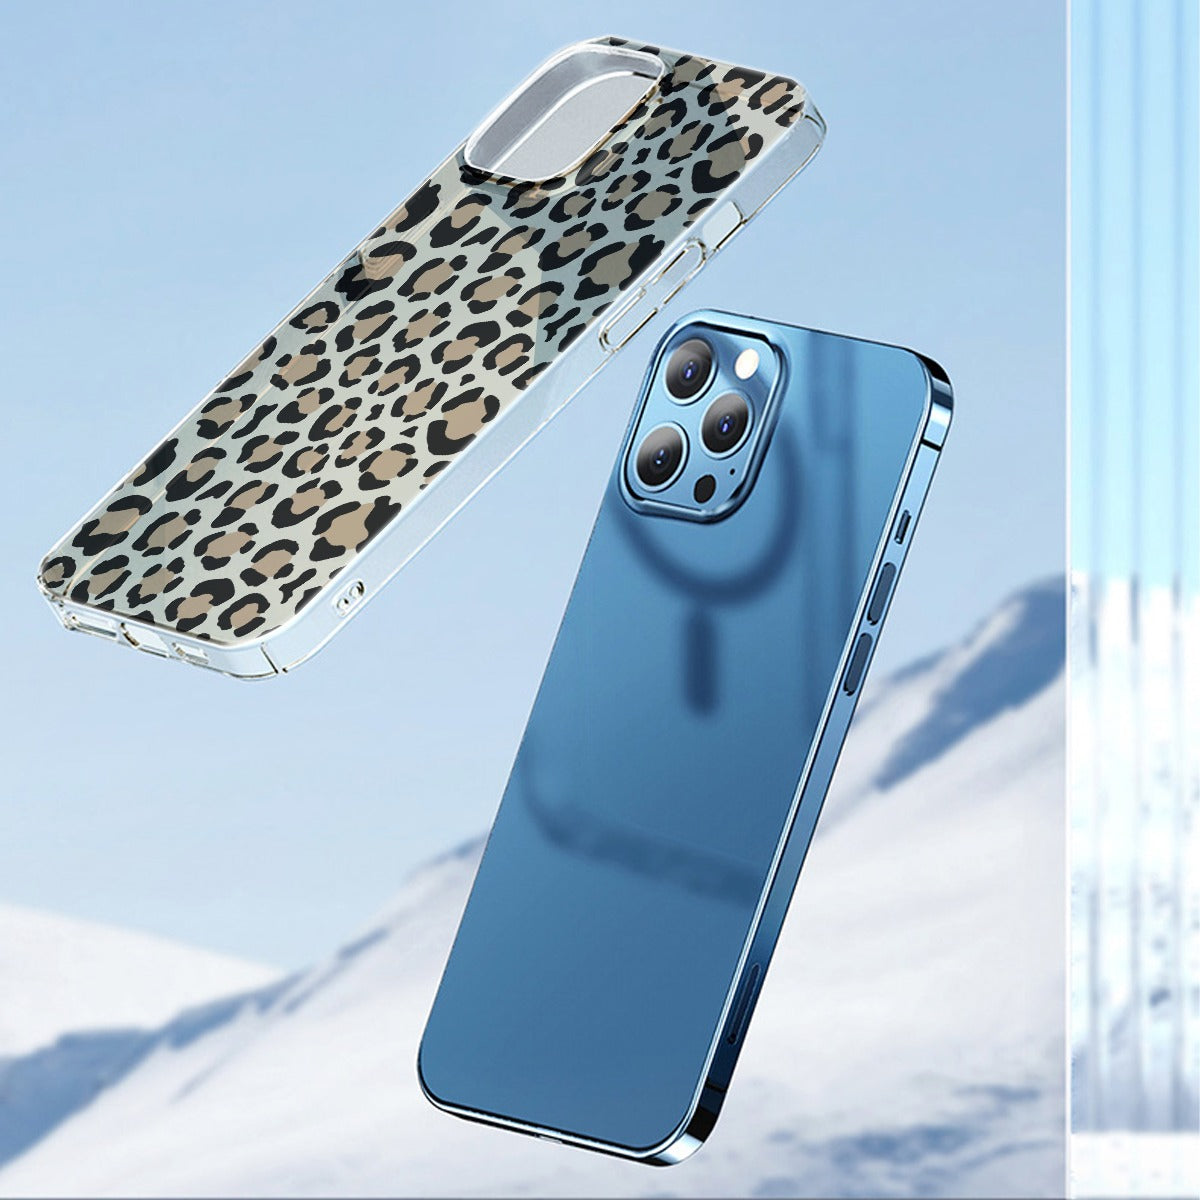 Leopard - iPhone13 Series Mobile Phone Case | TPU